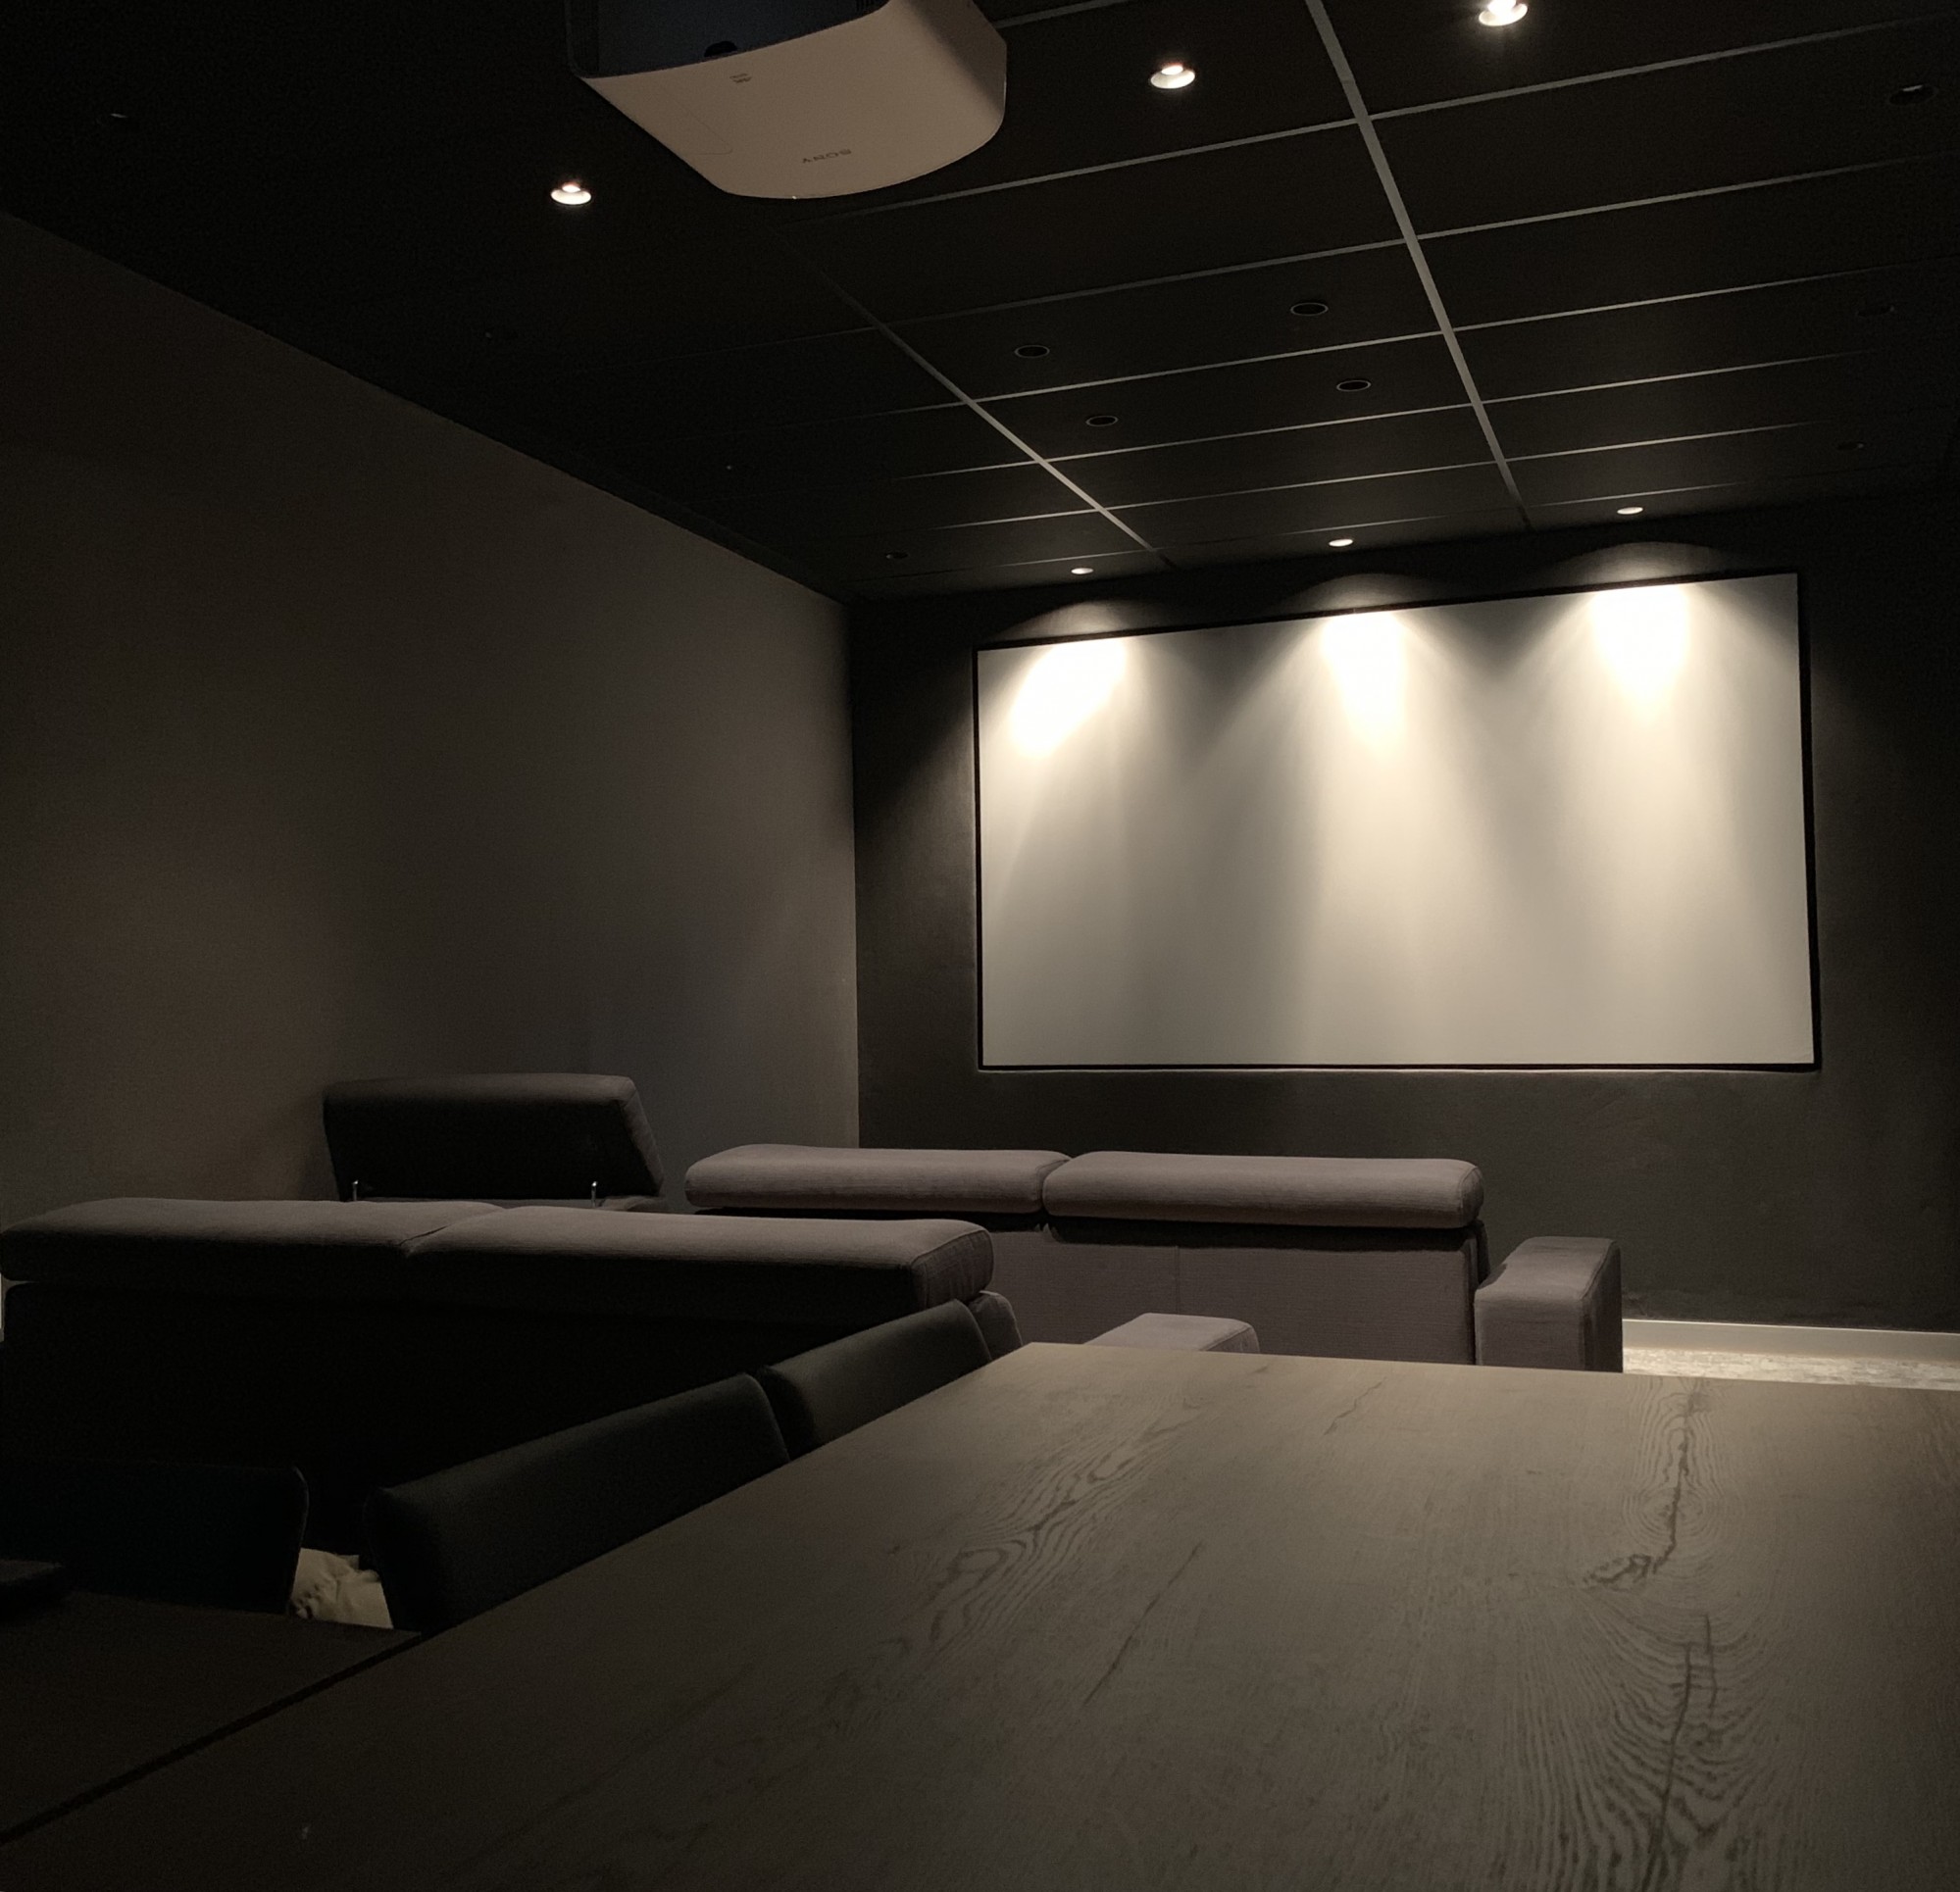 Notre zone d'activité pour ce service Installer un système home cinema 5.1 de luxe